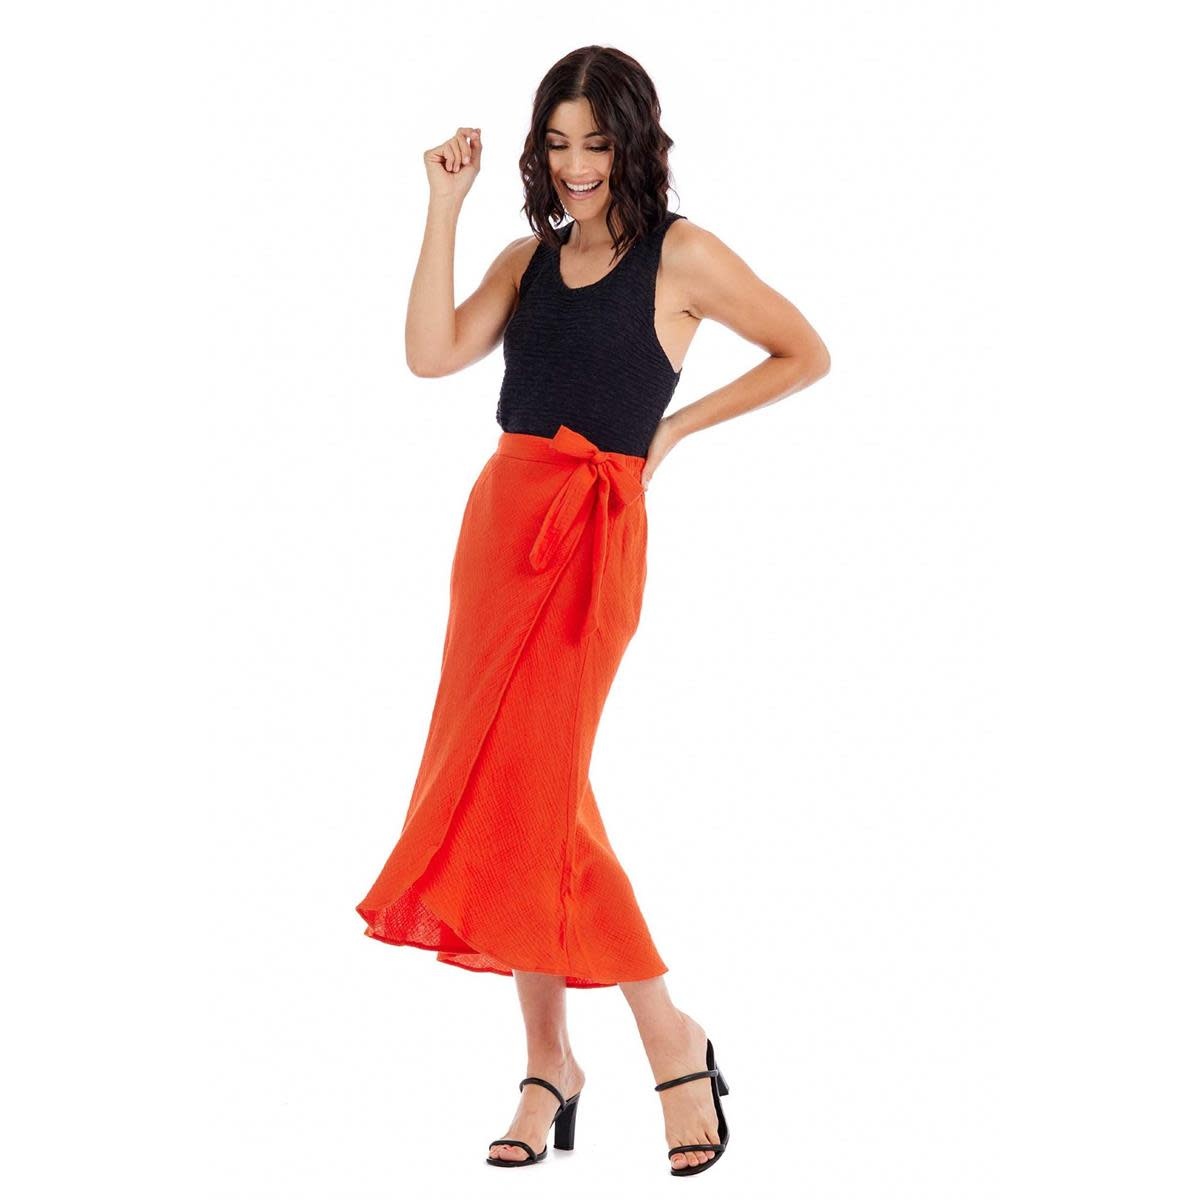 Mudpie Red (Orange) Mallie Wrap Skirt